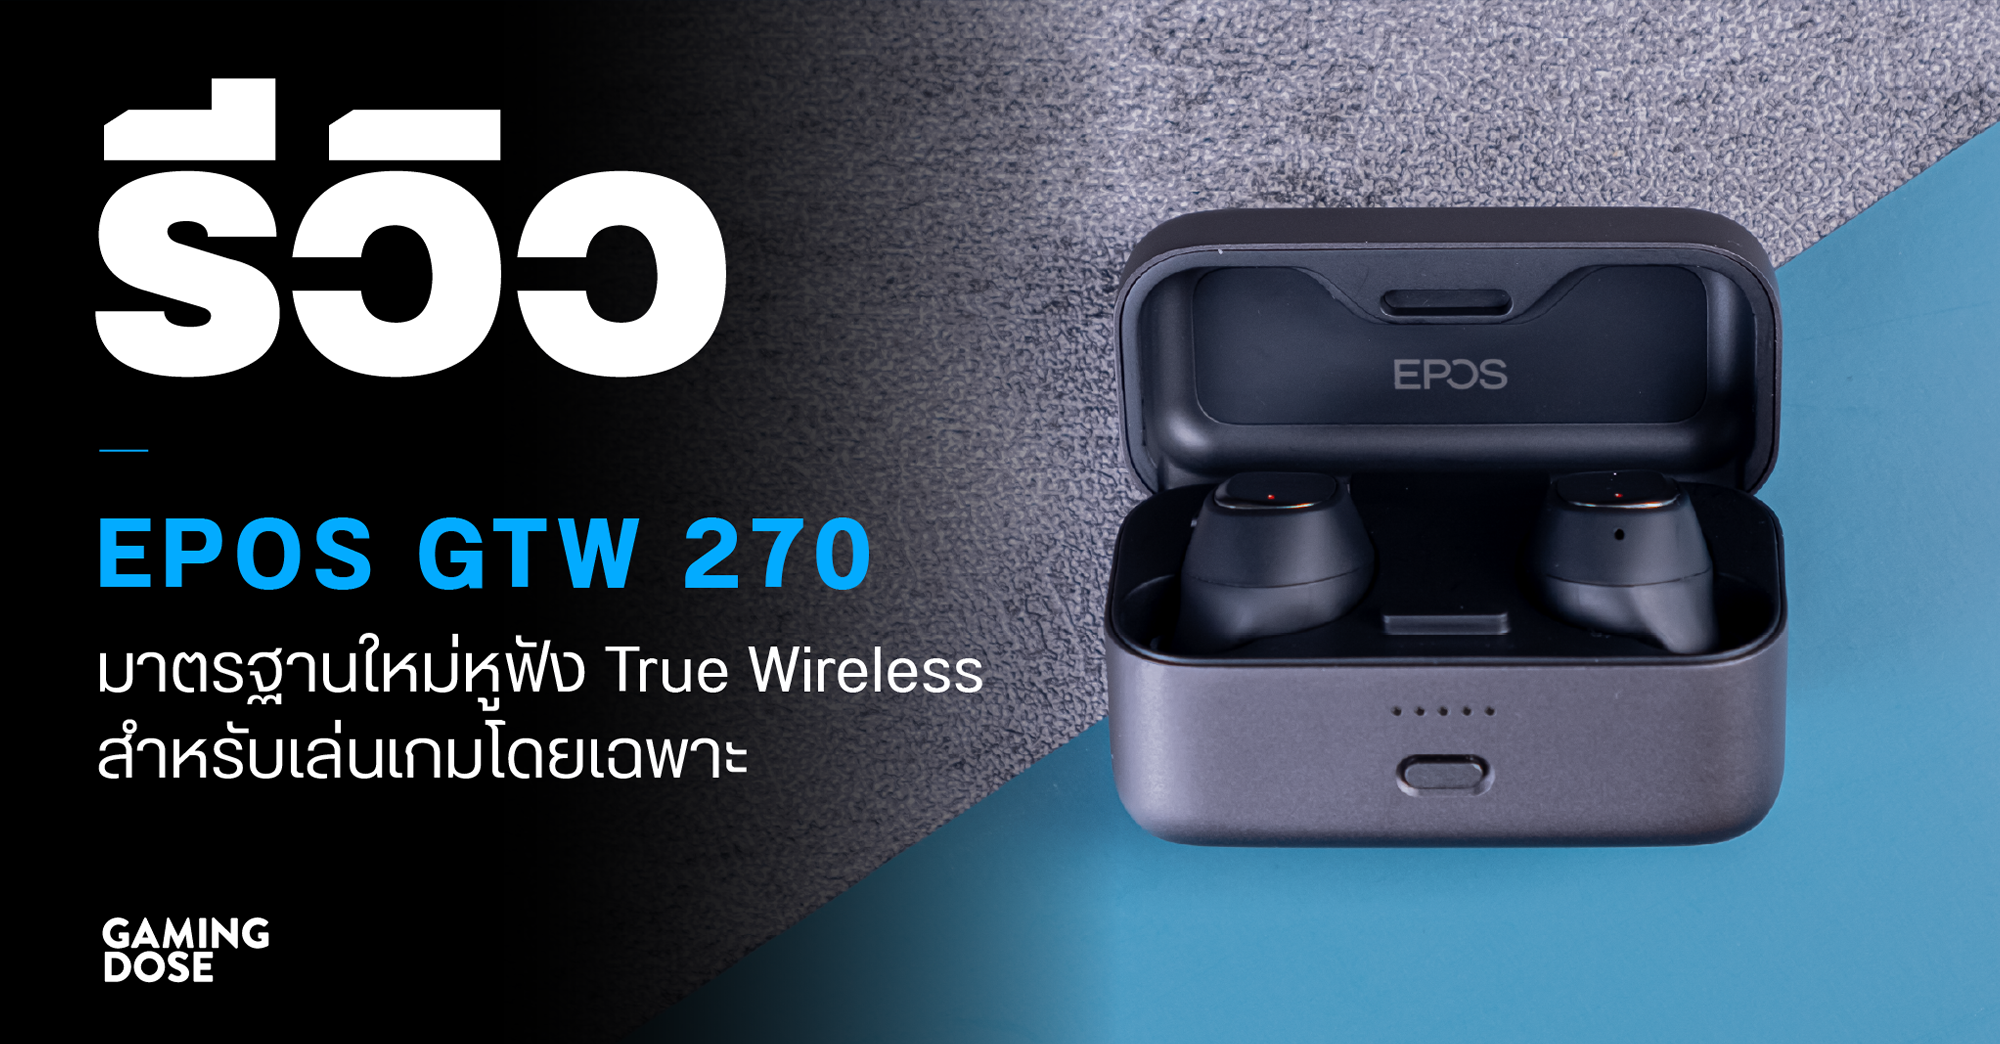 รีวิว EPOS GTW 270 มาตรฐานใหม่หูฟัง True Wireless สำหรับเล่นเกมโดยเฉพาะ